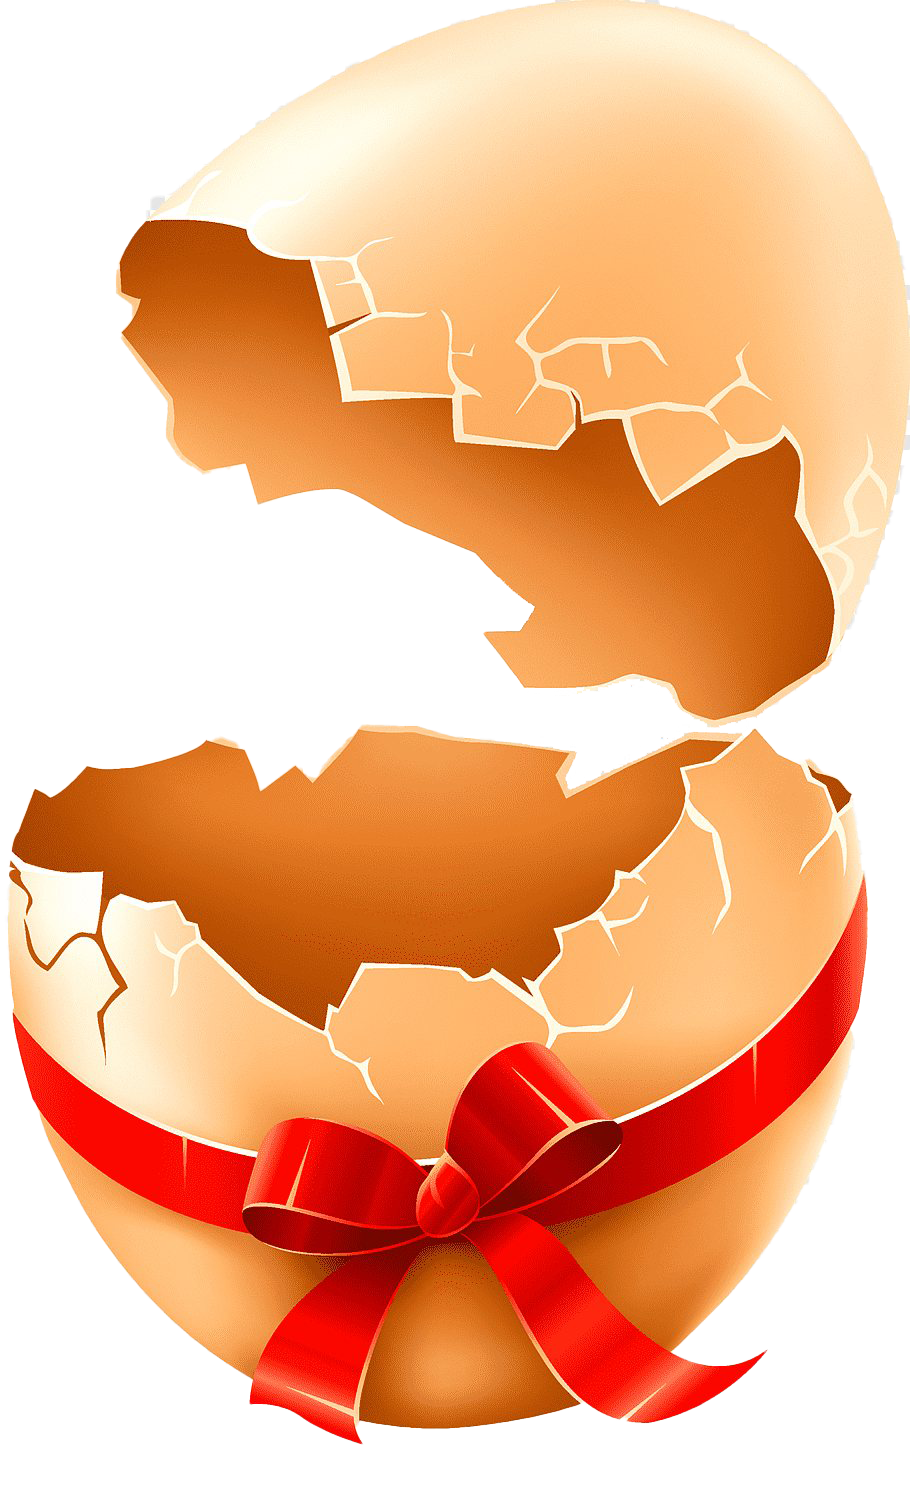 Imagen transparente de PNG de huevo de Pascua agrietado